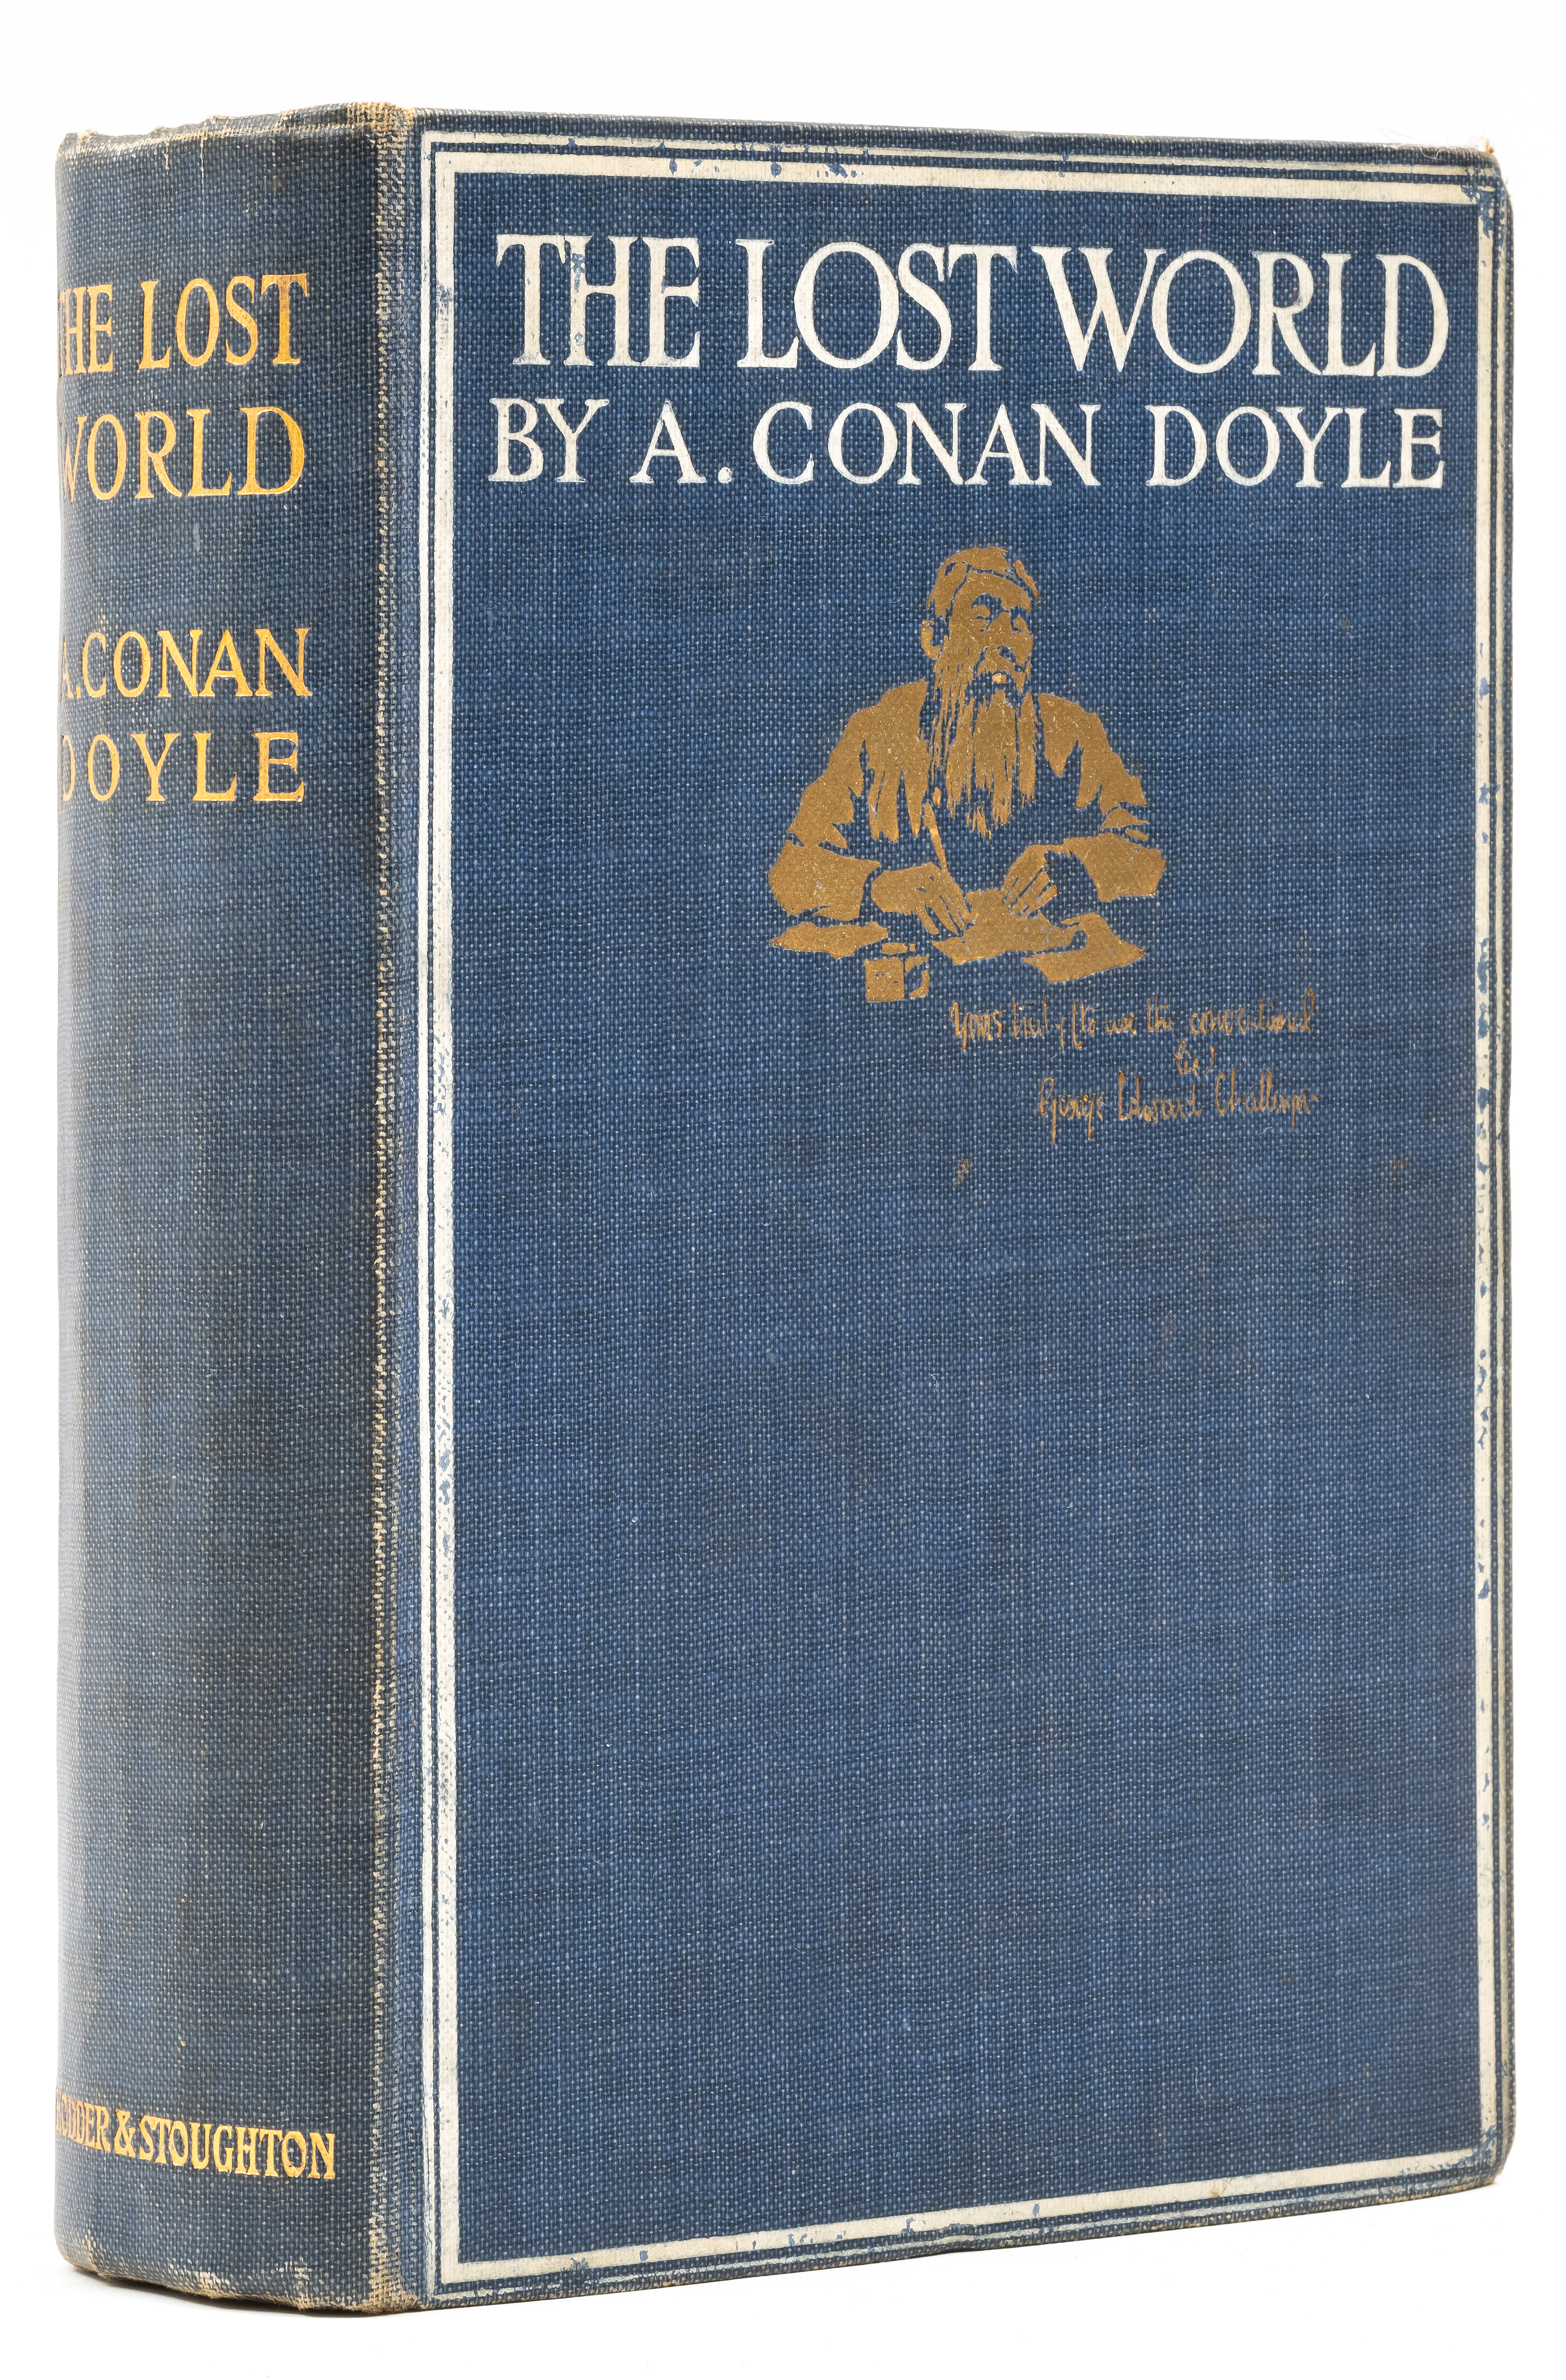 Doyle (Sir Arthur Conan) The Lost World, first edition, 1912.